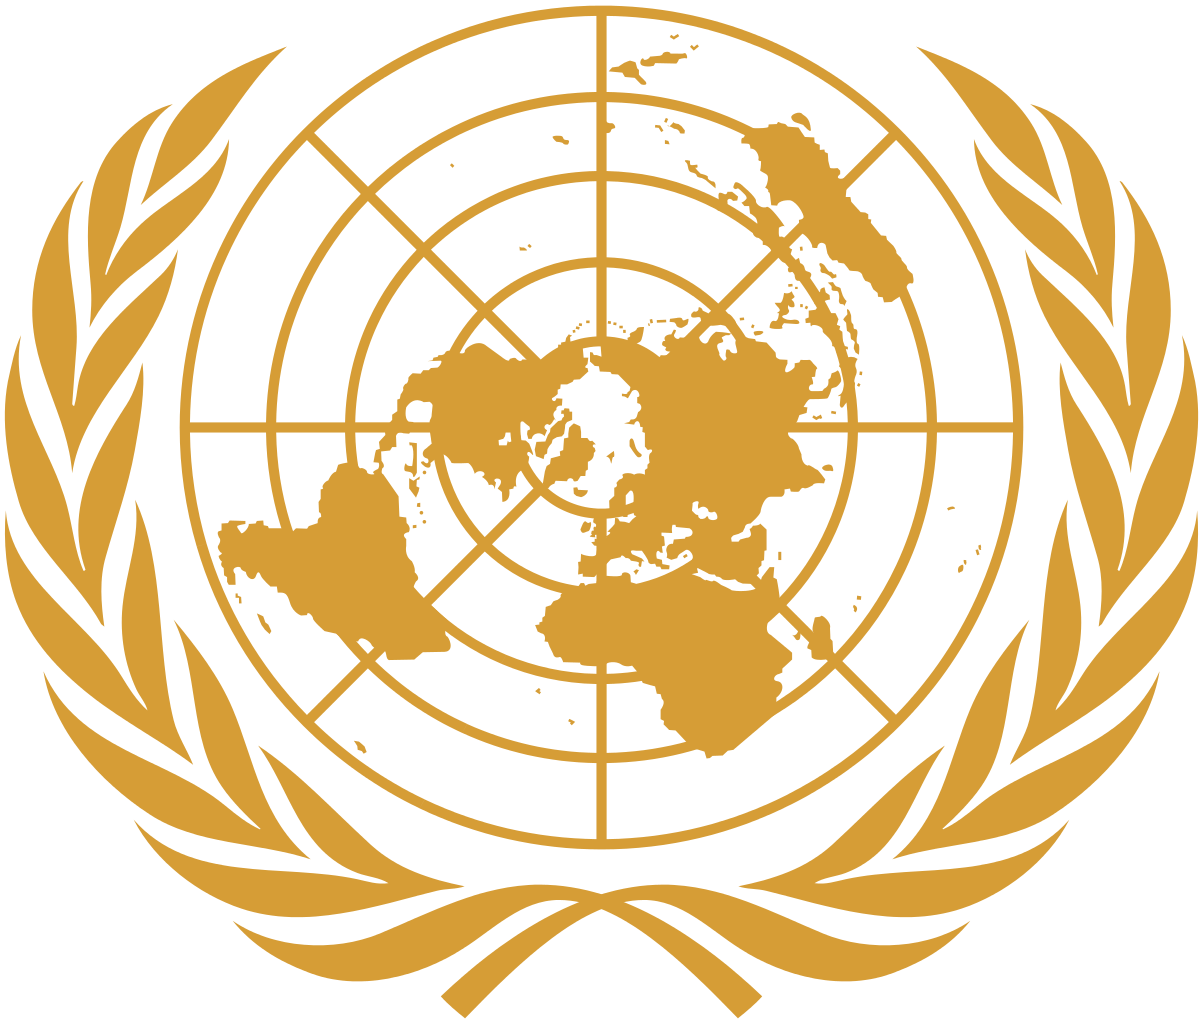 聯合國(聯和國)